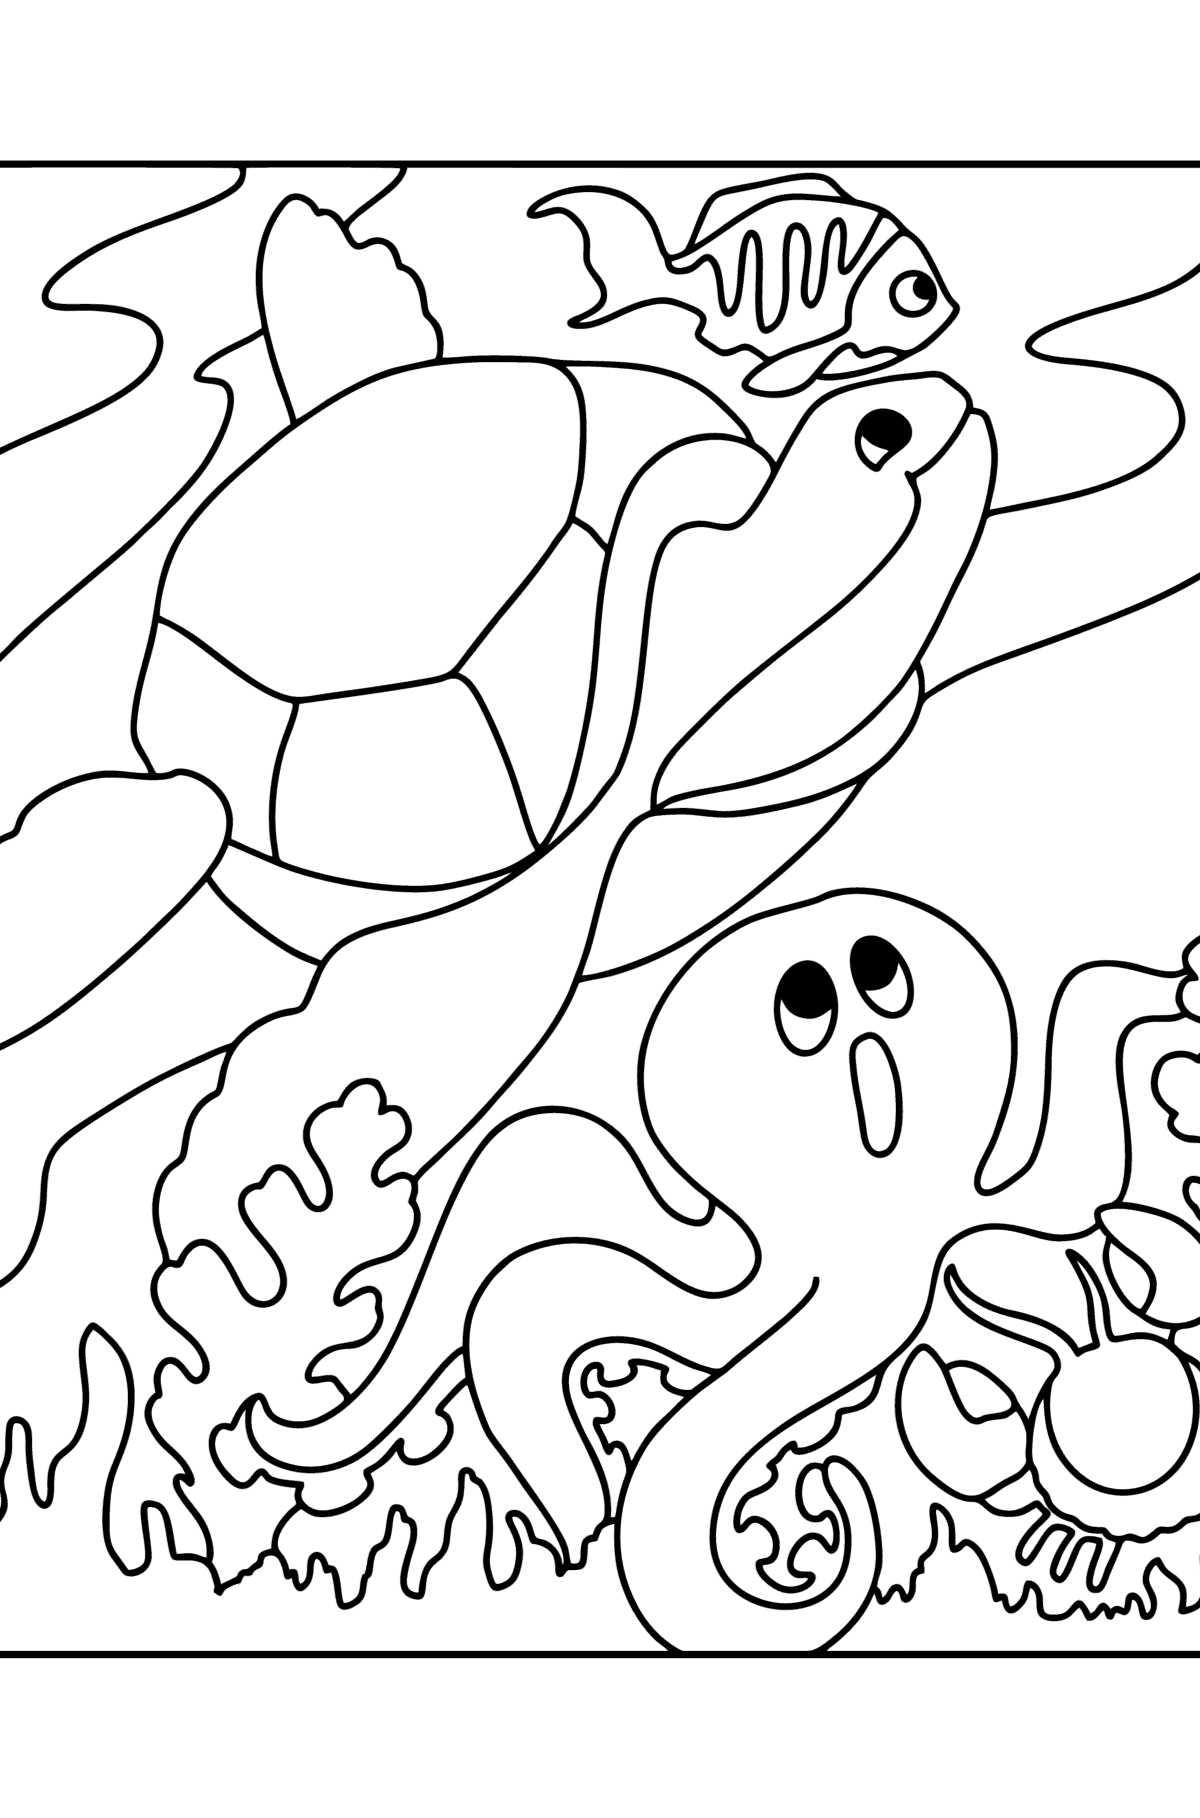 Раскраска Рыбка, Черепашка, Краб И Осьминог - Картинки для Детей